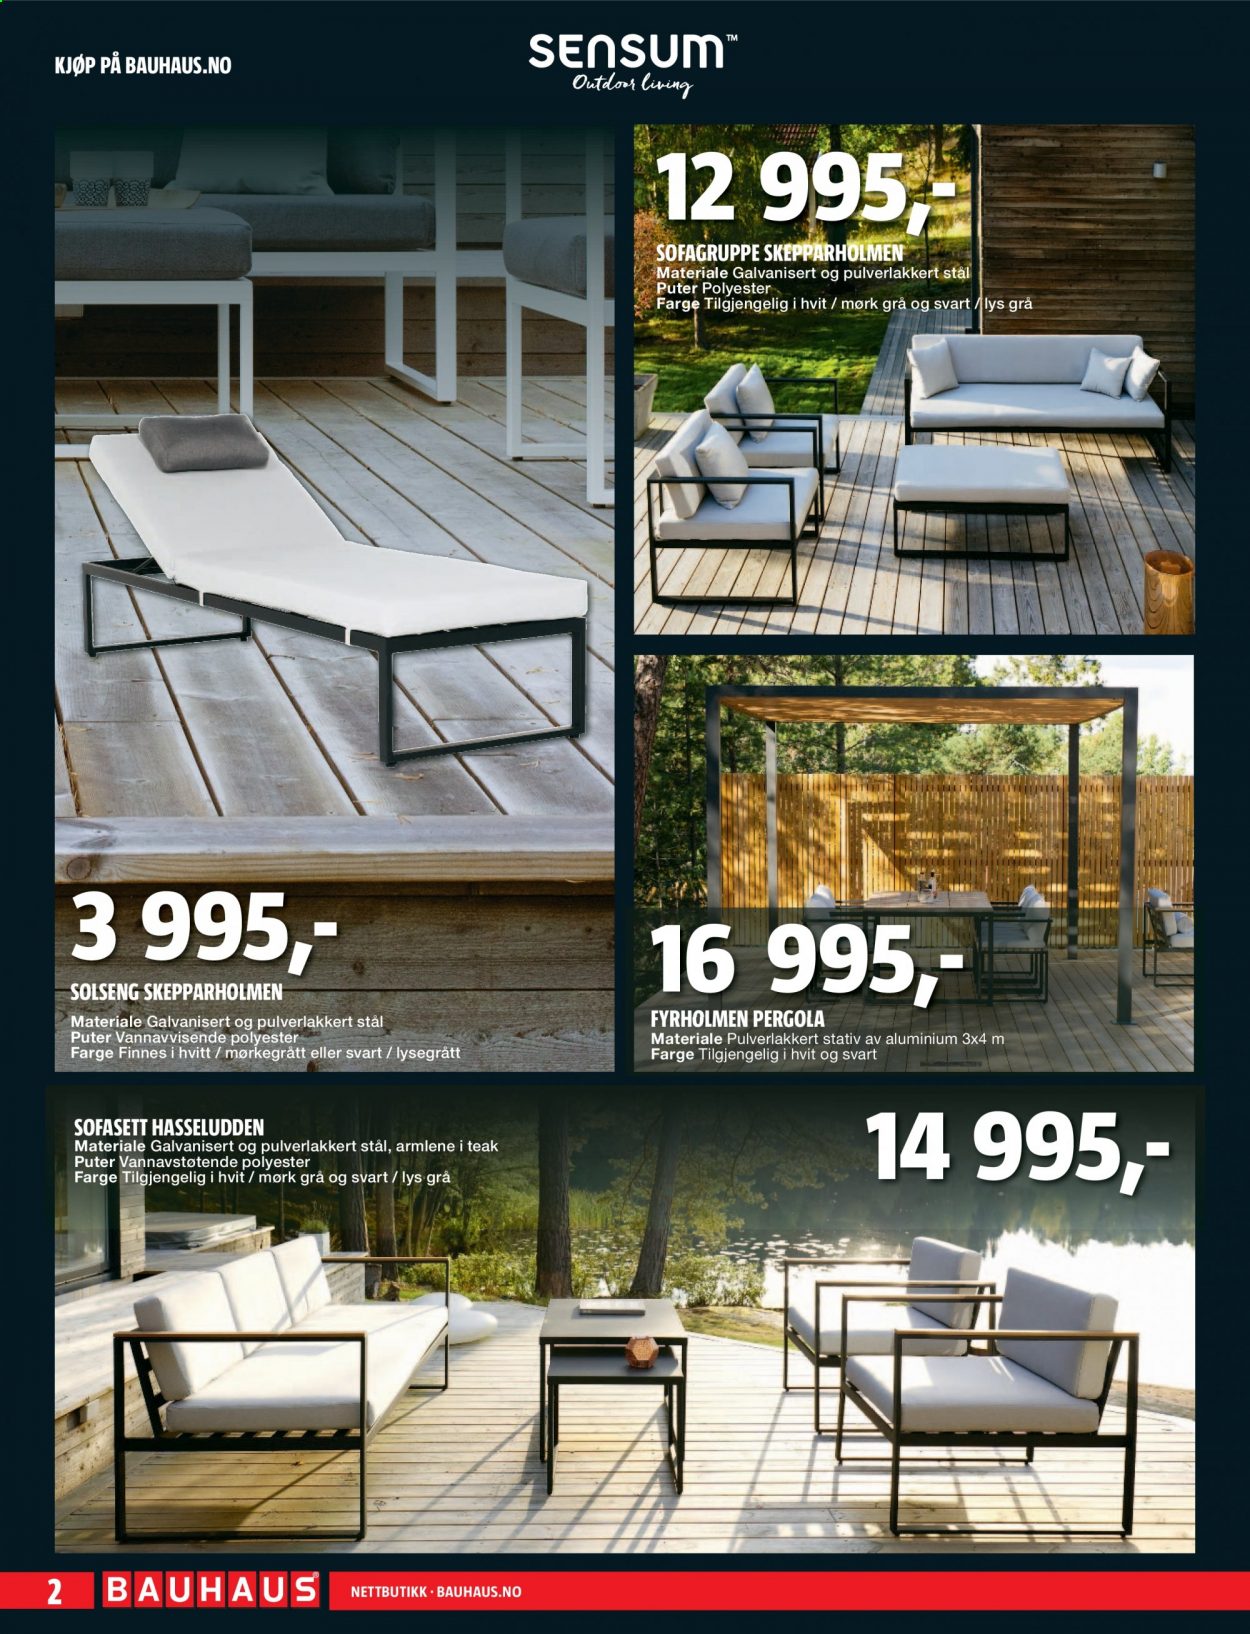 thumbnail - Kundeavis Bauhaus - 28.6.2021 - 11.7.2021 - Produkter fra tilbudsaviser - pute, sofa, solseng, stativ. Side 2.